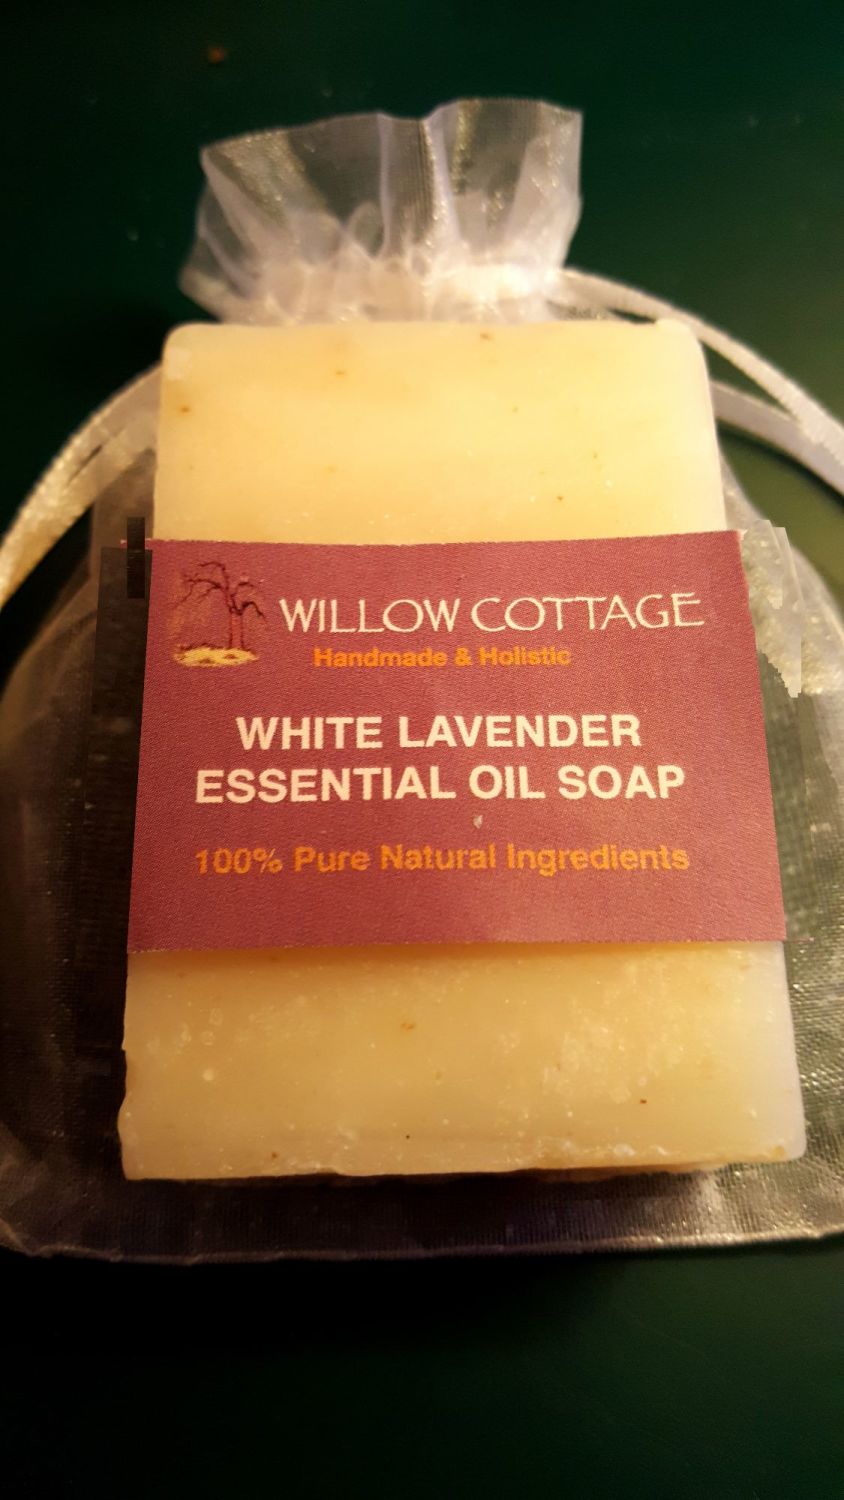 White Lavender - Essential Oil Soap